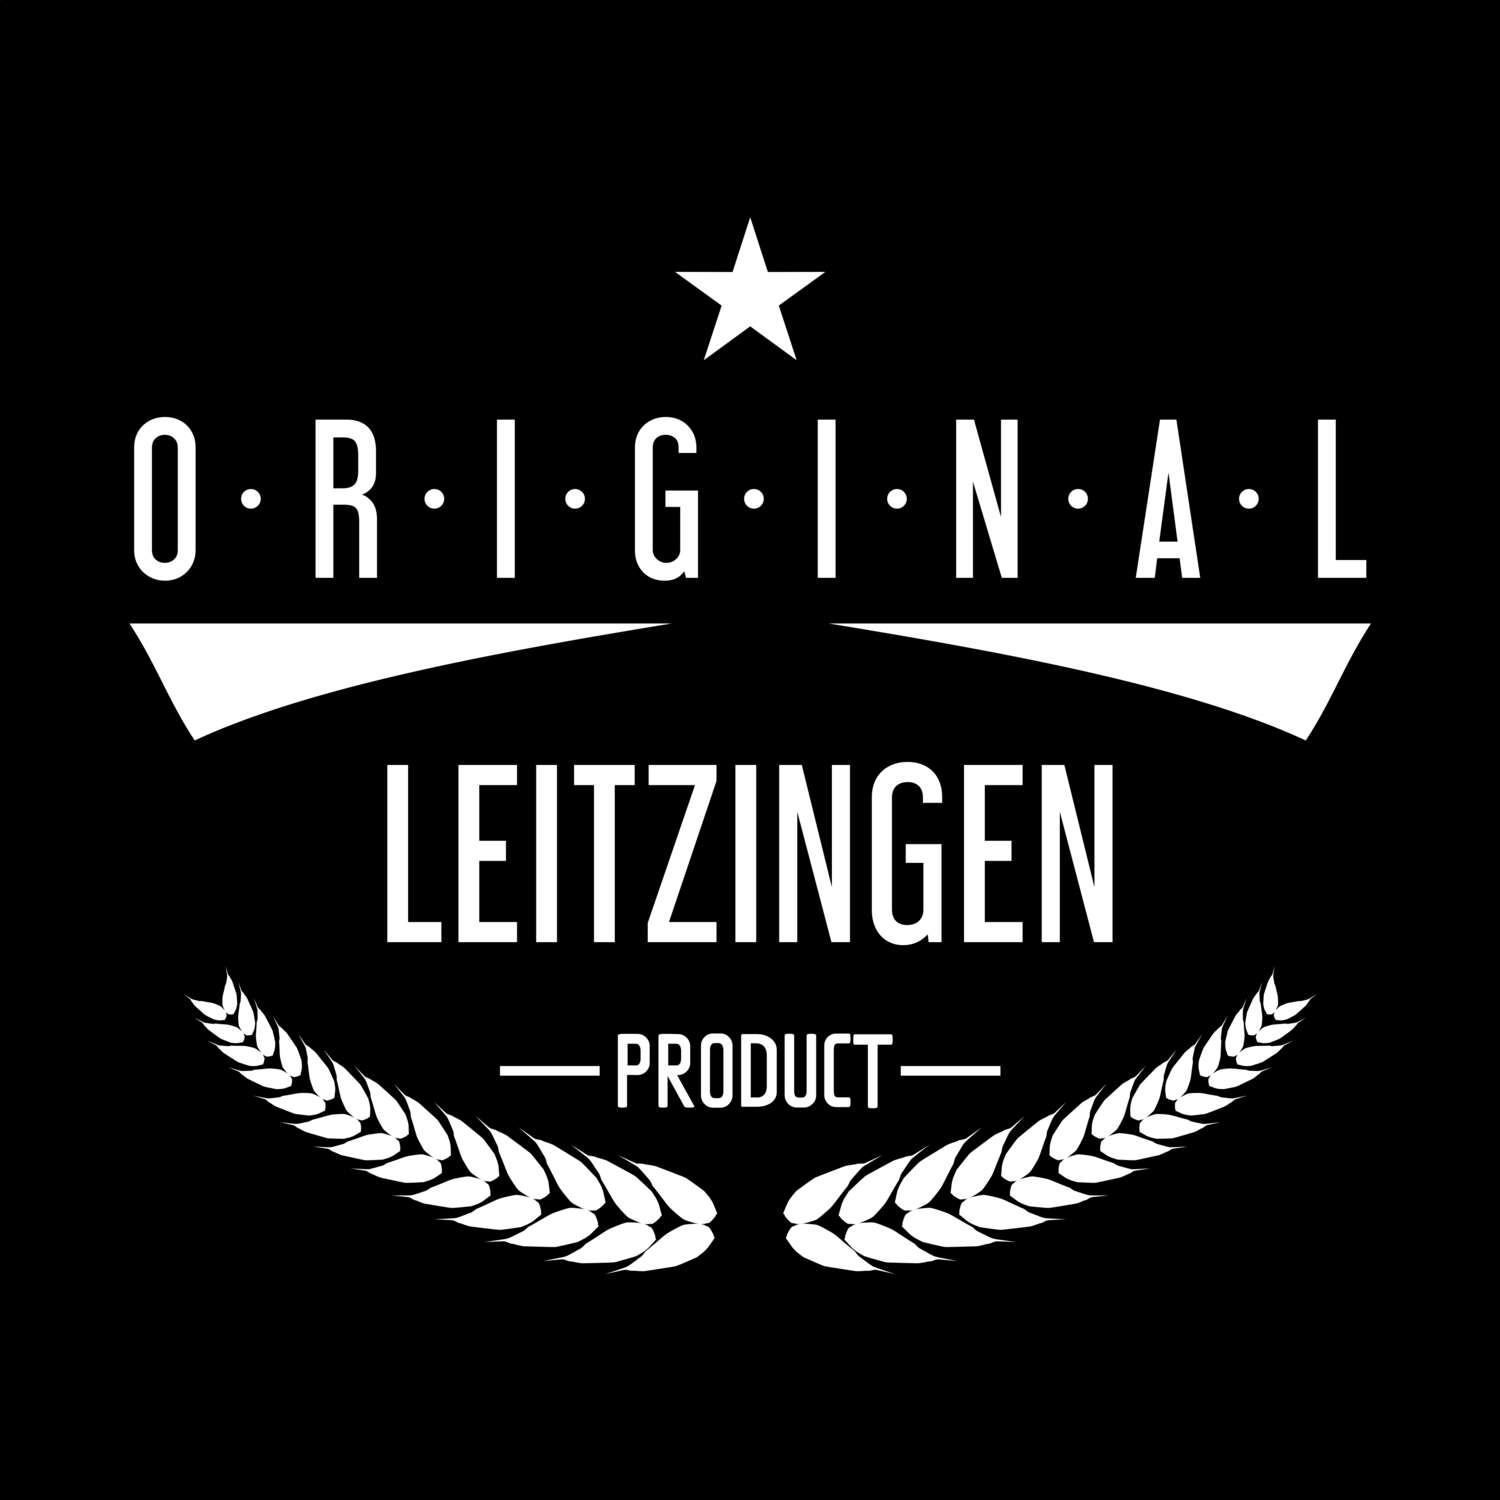 Leitzingen T-Shirt »Original Product«